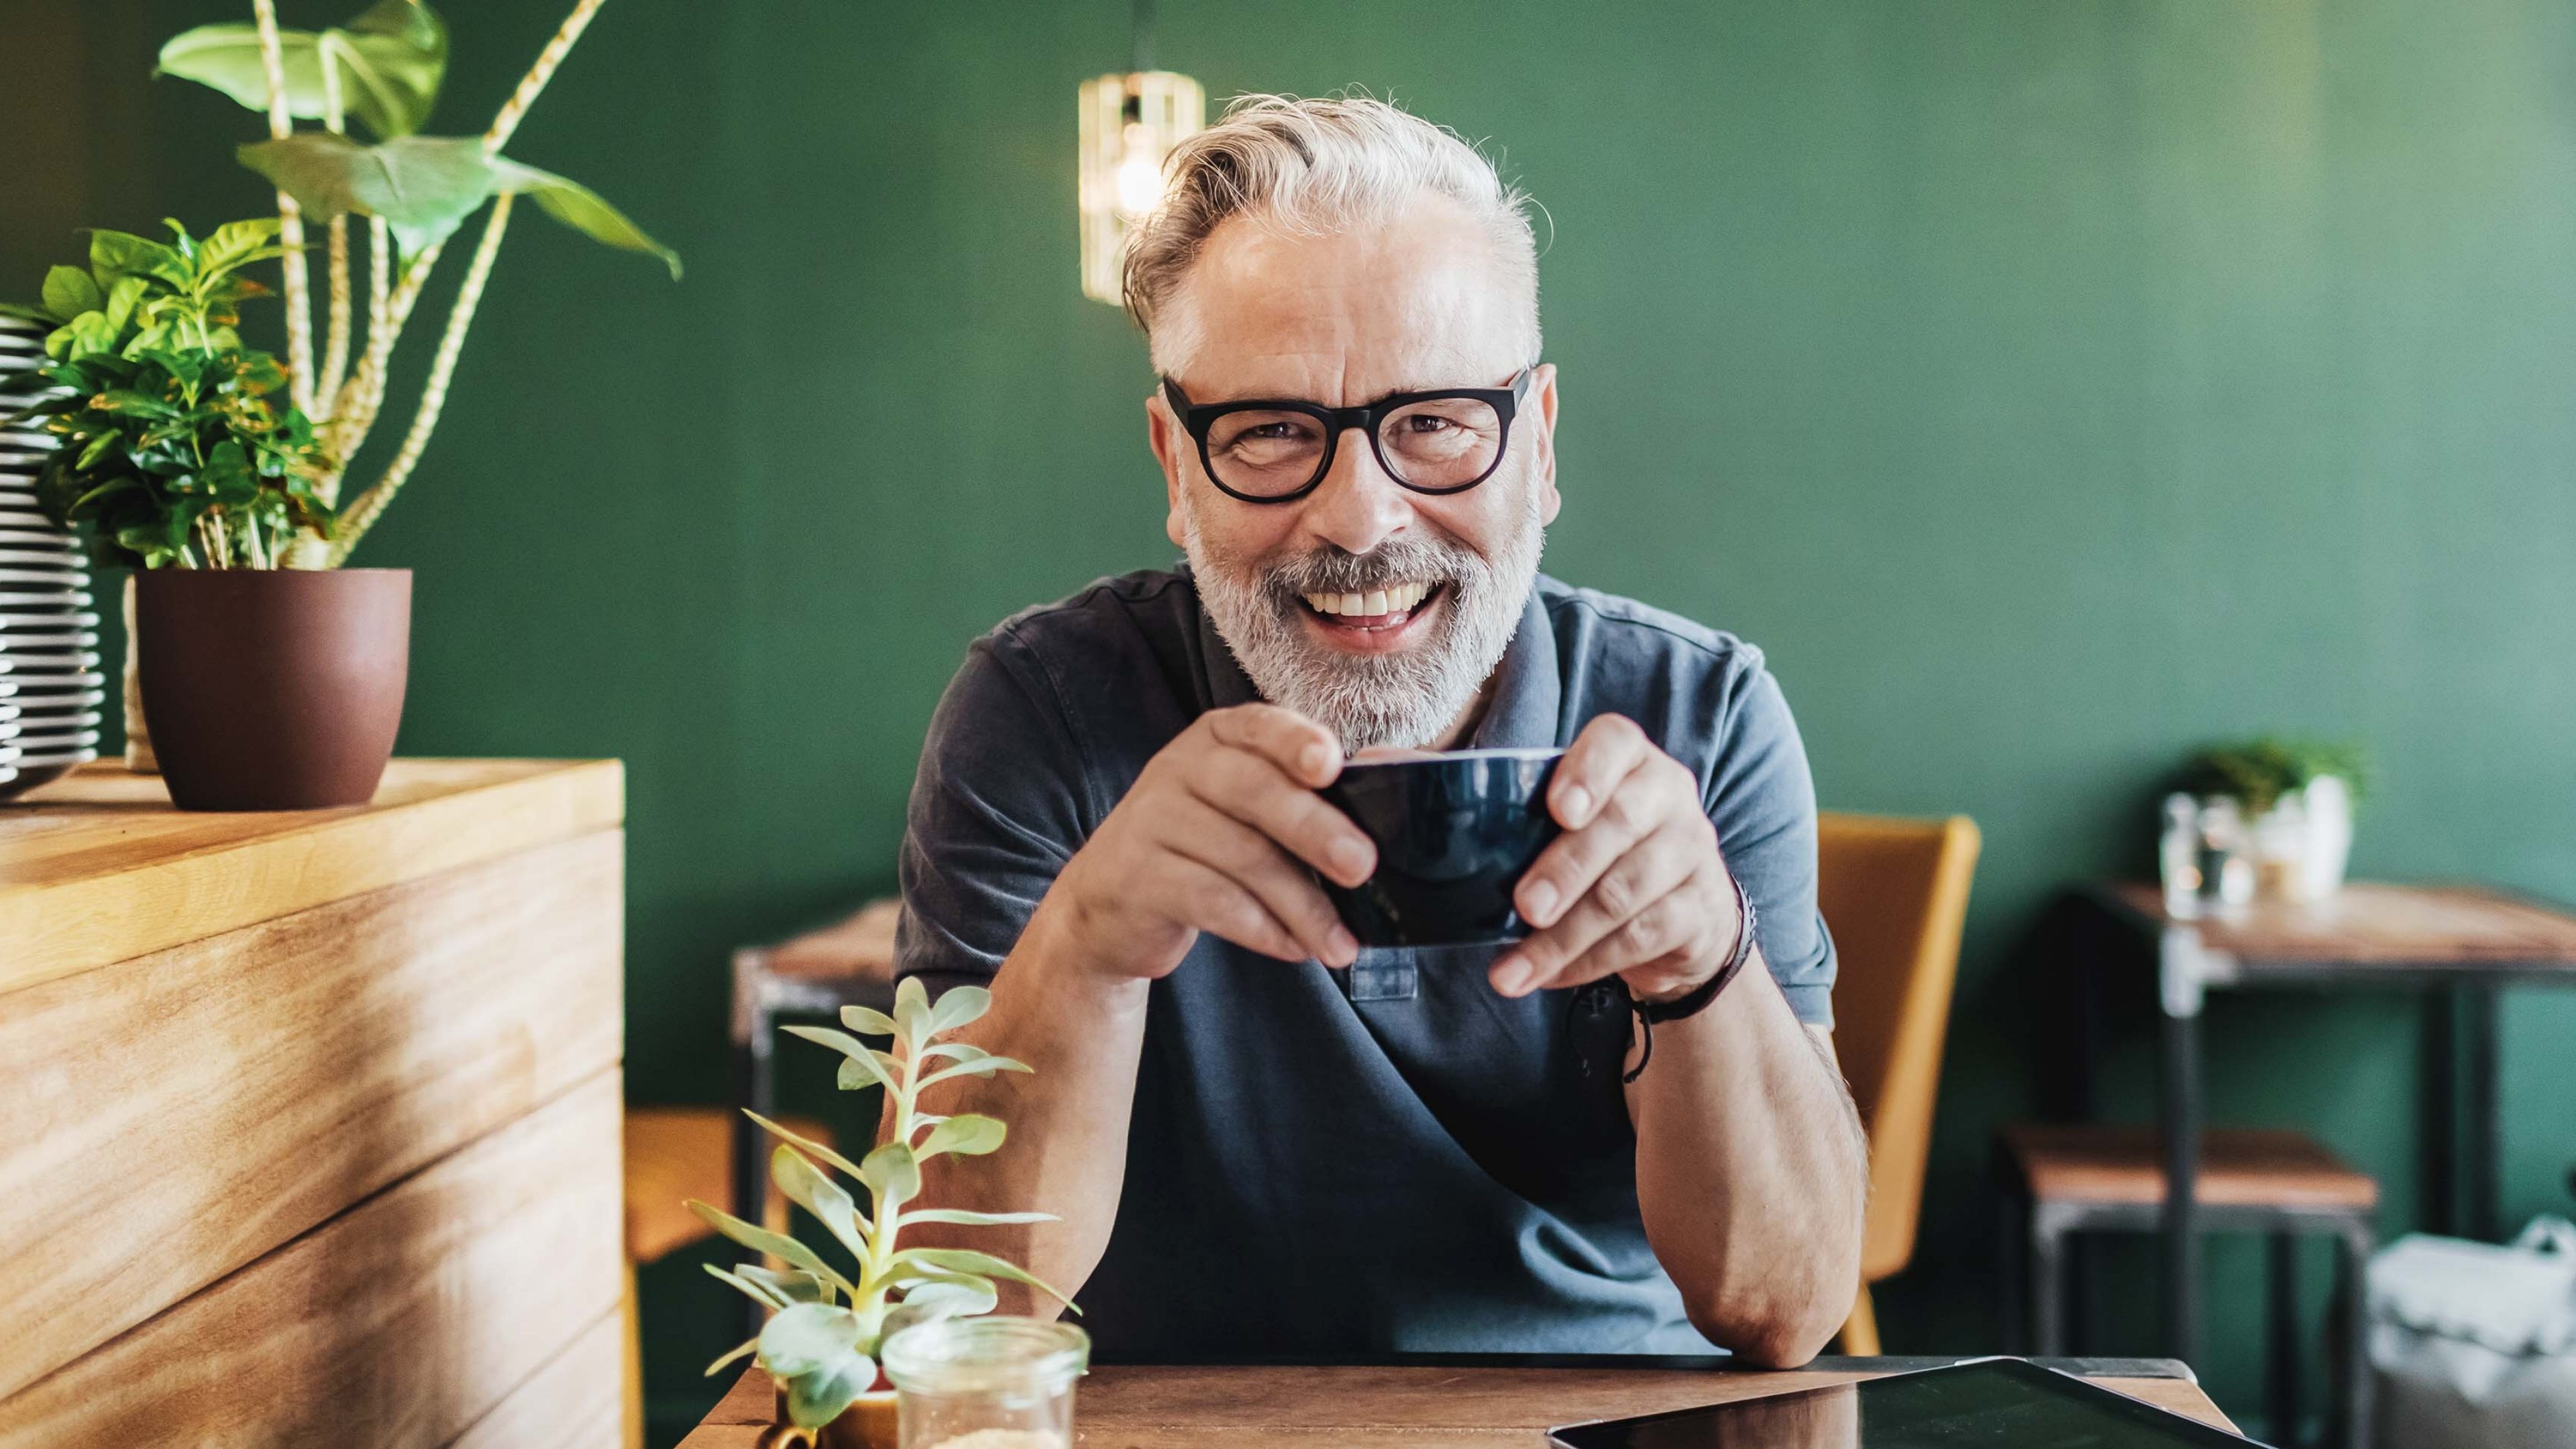 Mann sitzt im Kaffee mit einer Kaffeetasse in der Hand und freut sich auf die Pensionierung